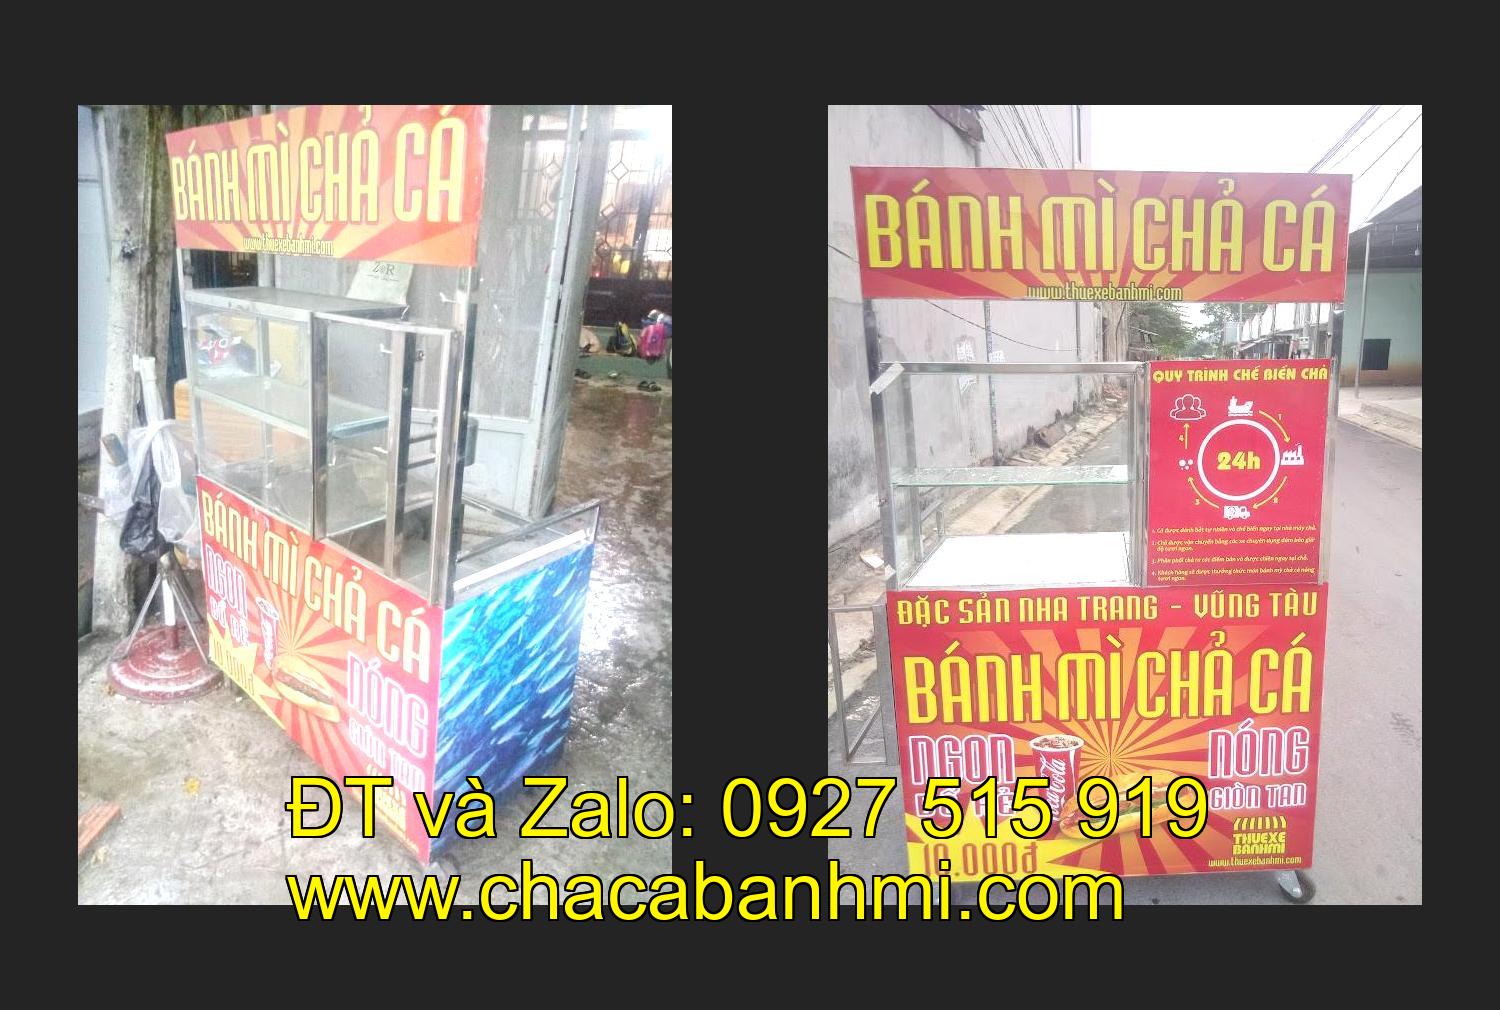 xe bánh mì chả cá inox tại tỉnh Yên Bái